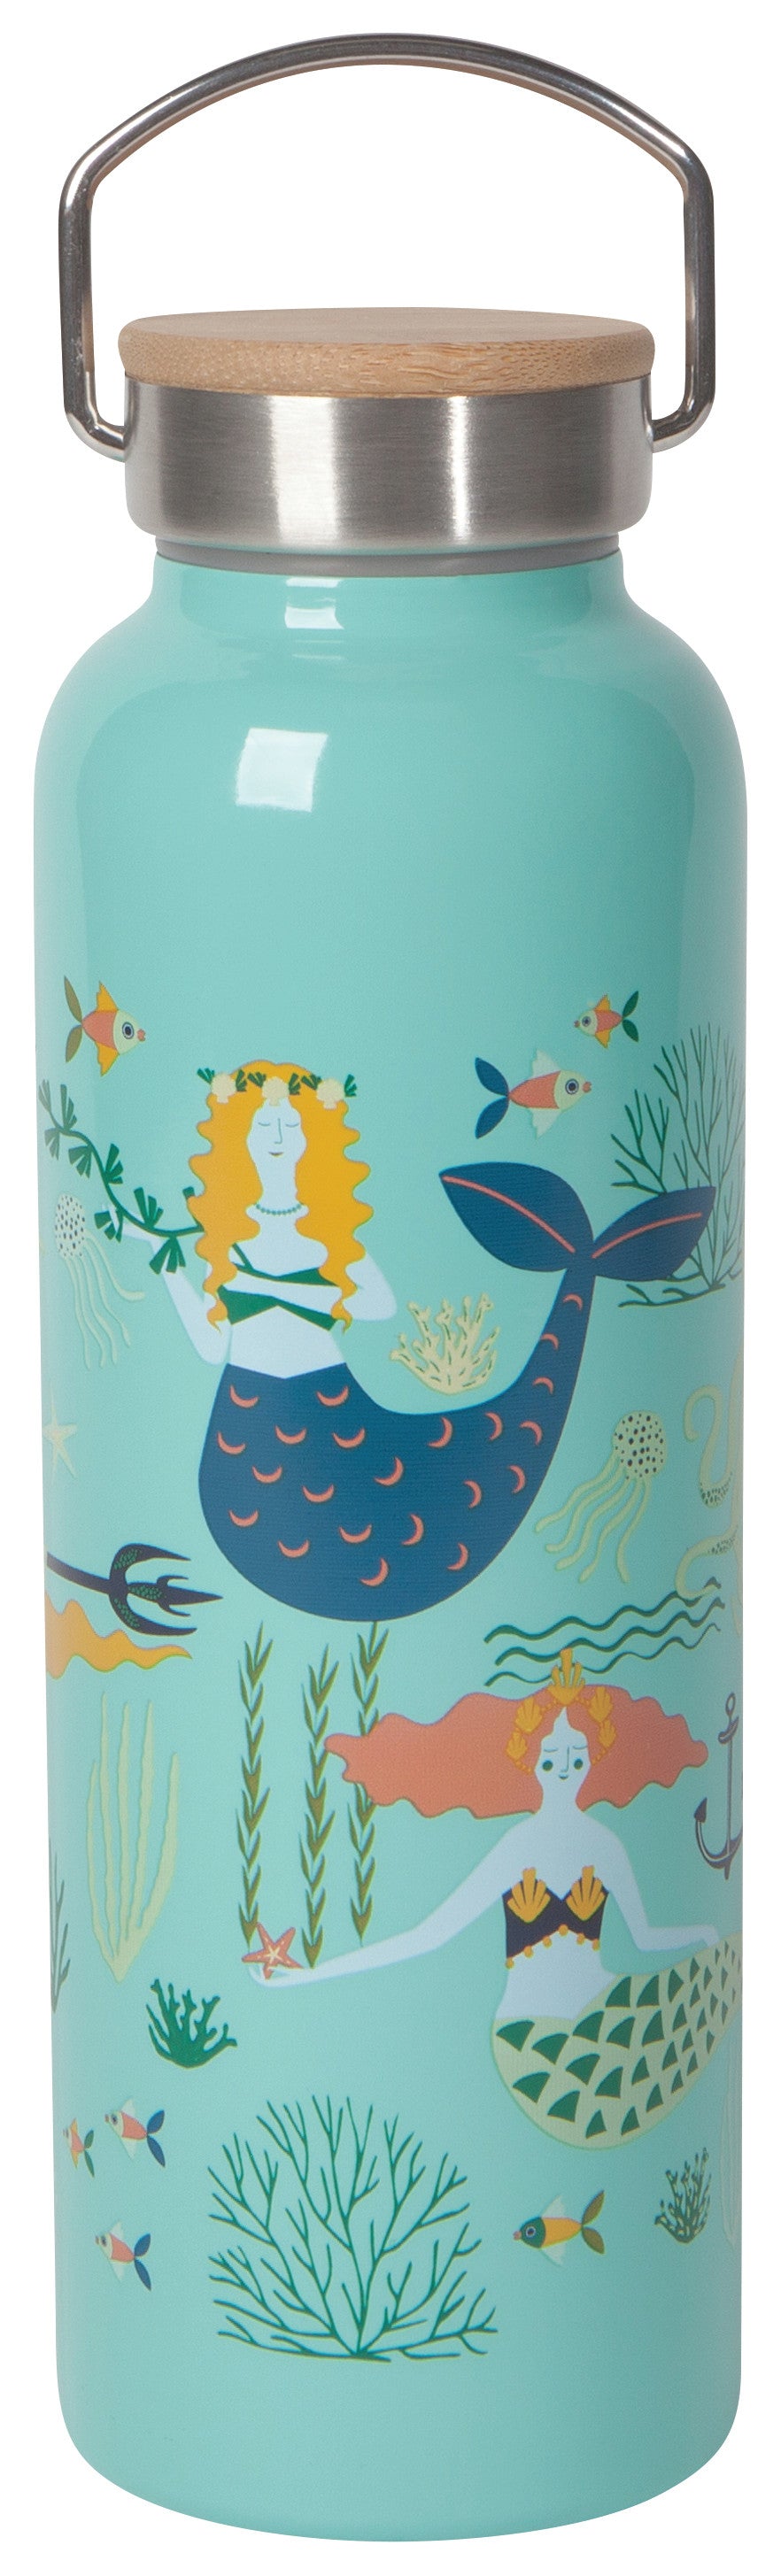 Roam Water Bottle - Mermaids Danica - Oscar & Libby's